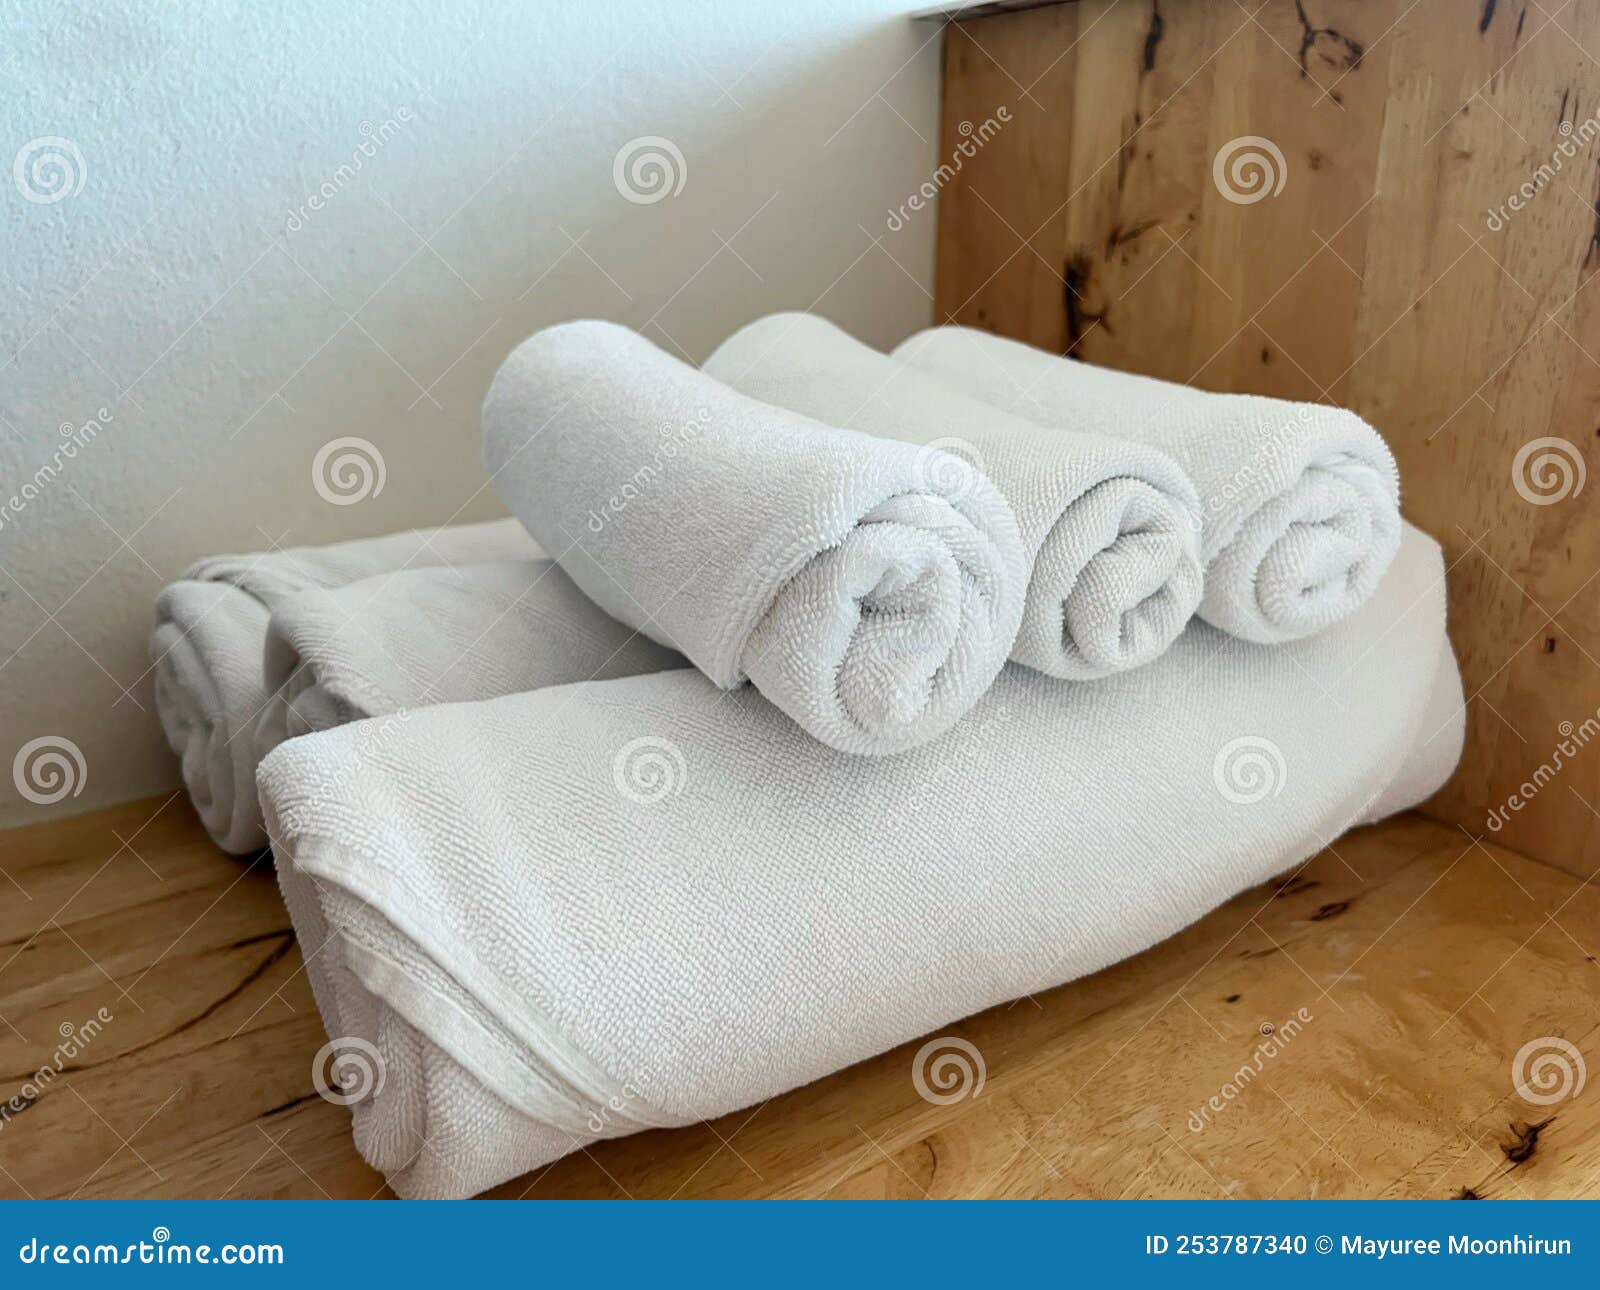 Asciugamani Di Cotone Bianco Laminati a Freddo in Un Hotel Di Lusso Per  Farsi Una Doccia Fotografia Stock - Immagine di igiene, lifestyle: 253787340